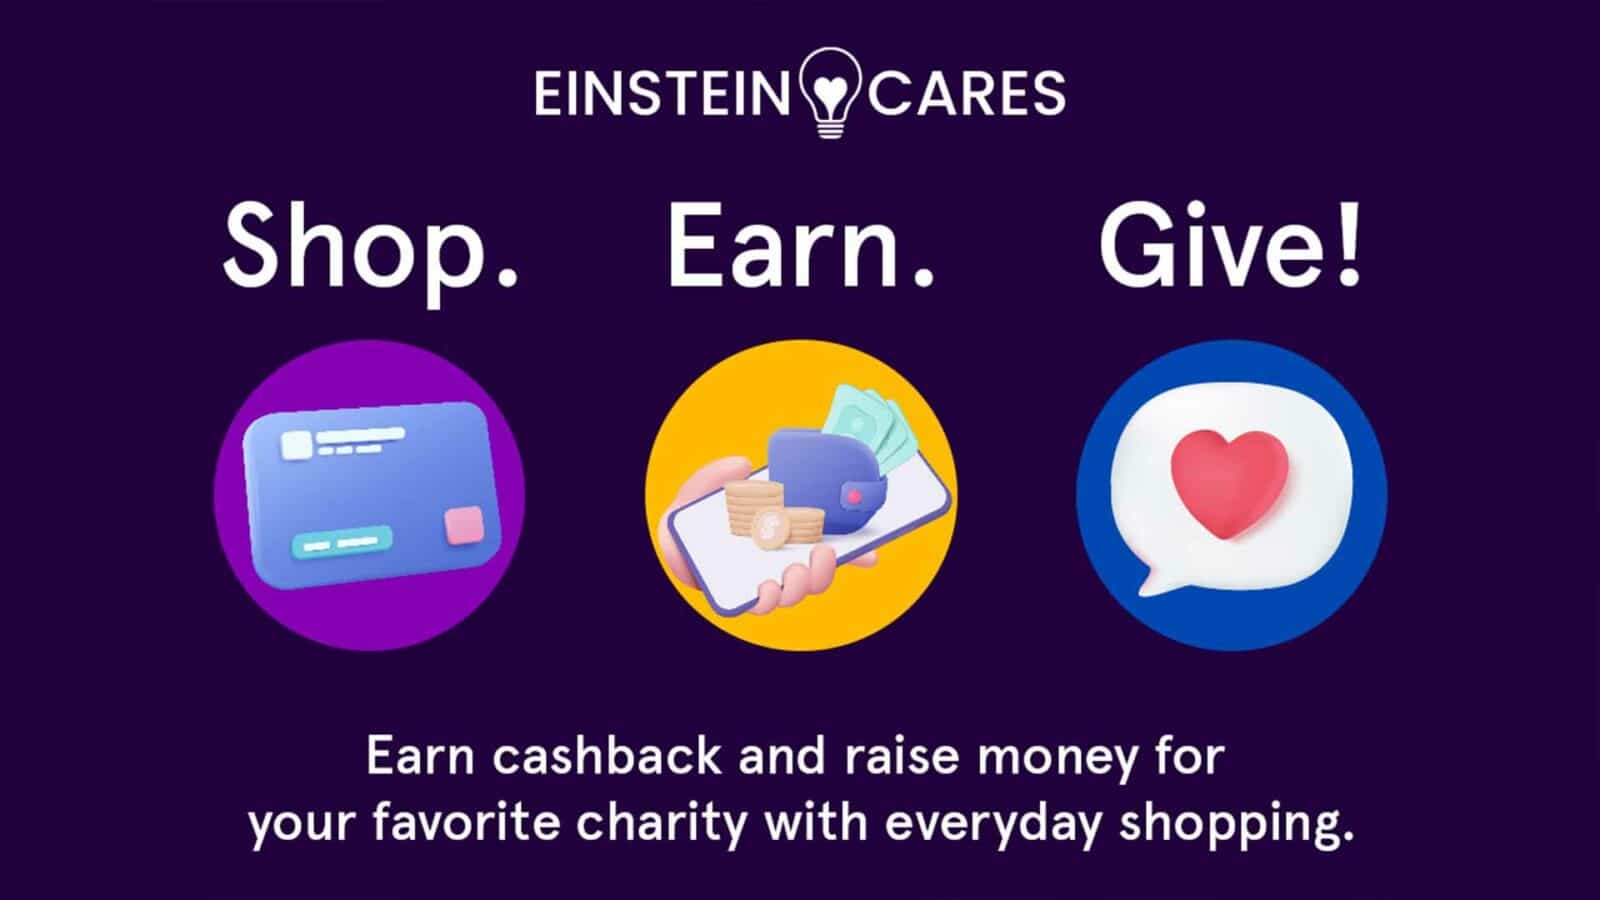 Einsteincares-Shop: Geld verdienen, Geld zurückgeben